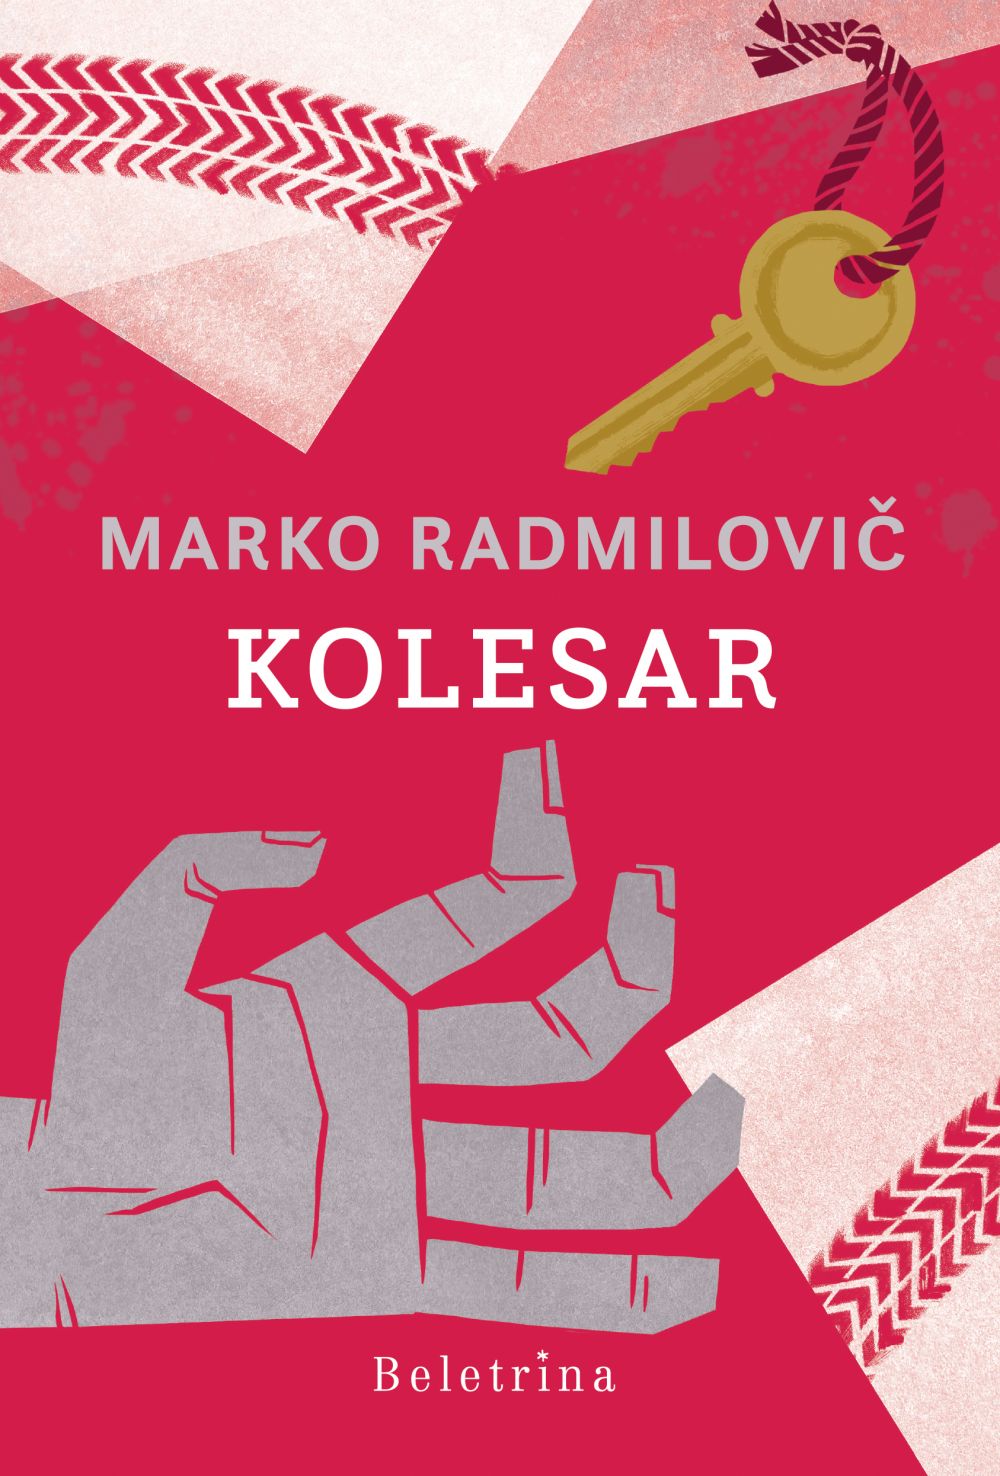 Vabljeni na večer z Markom Radmilovičem, avtorjem knjige Kolesar